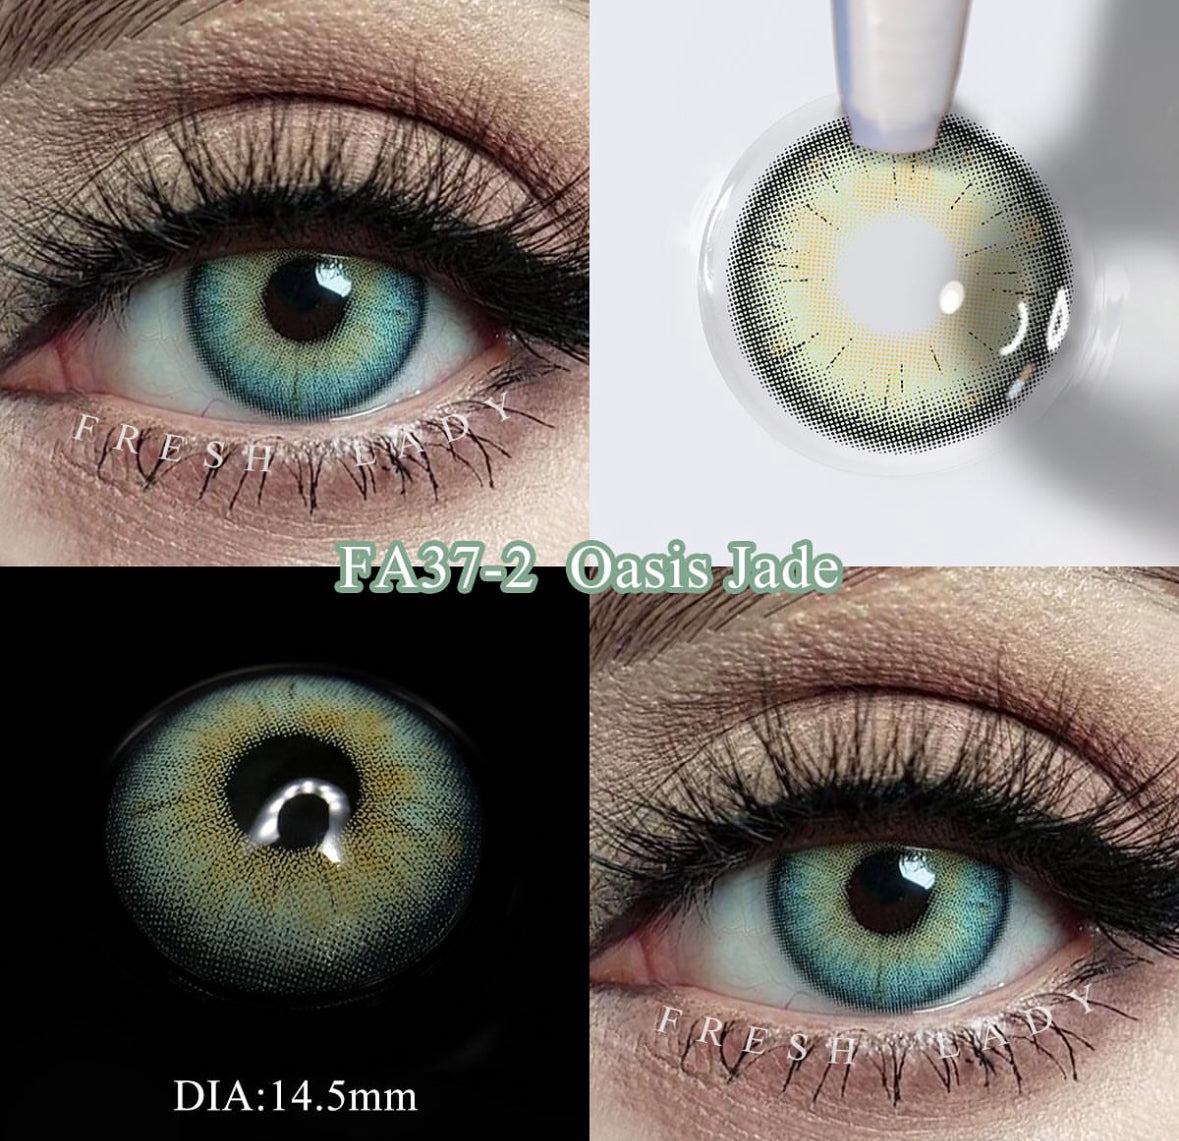 Oasis Jade Freshlady (pupila reducida)